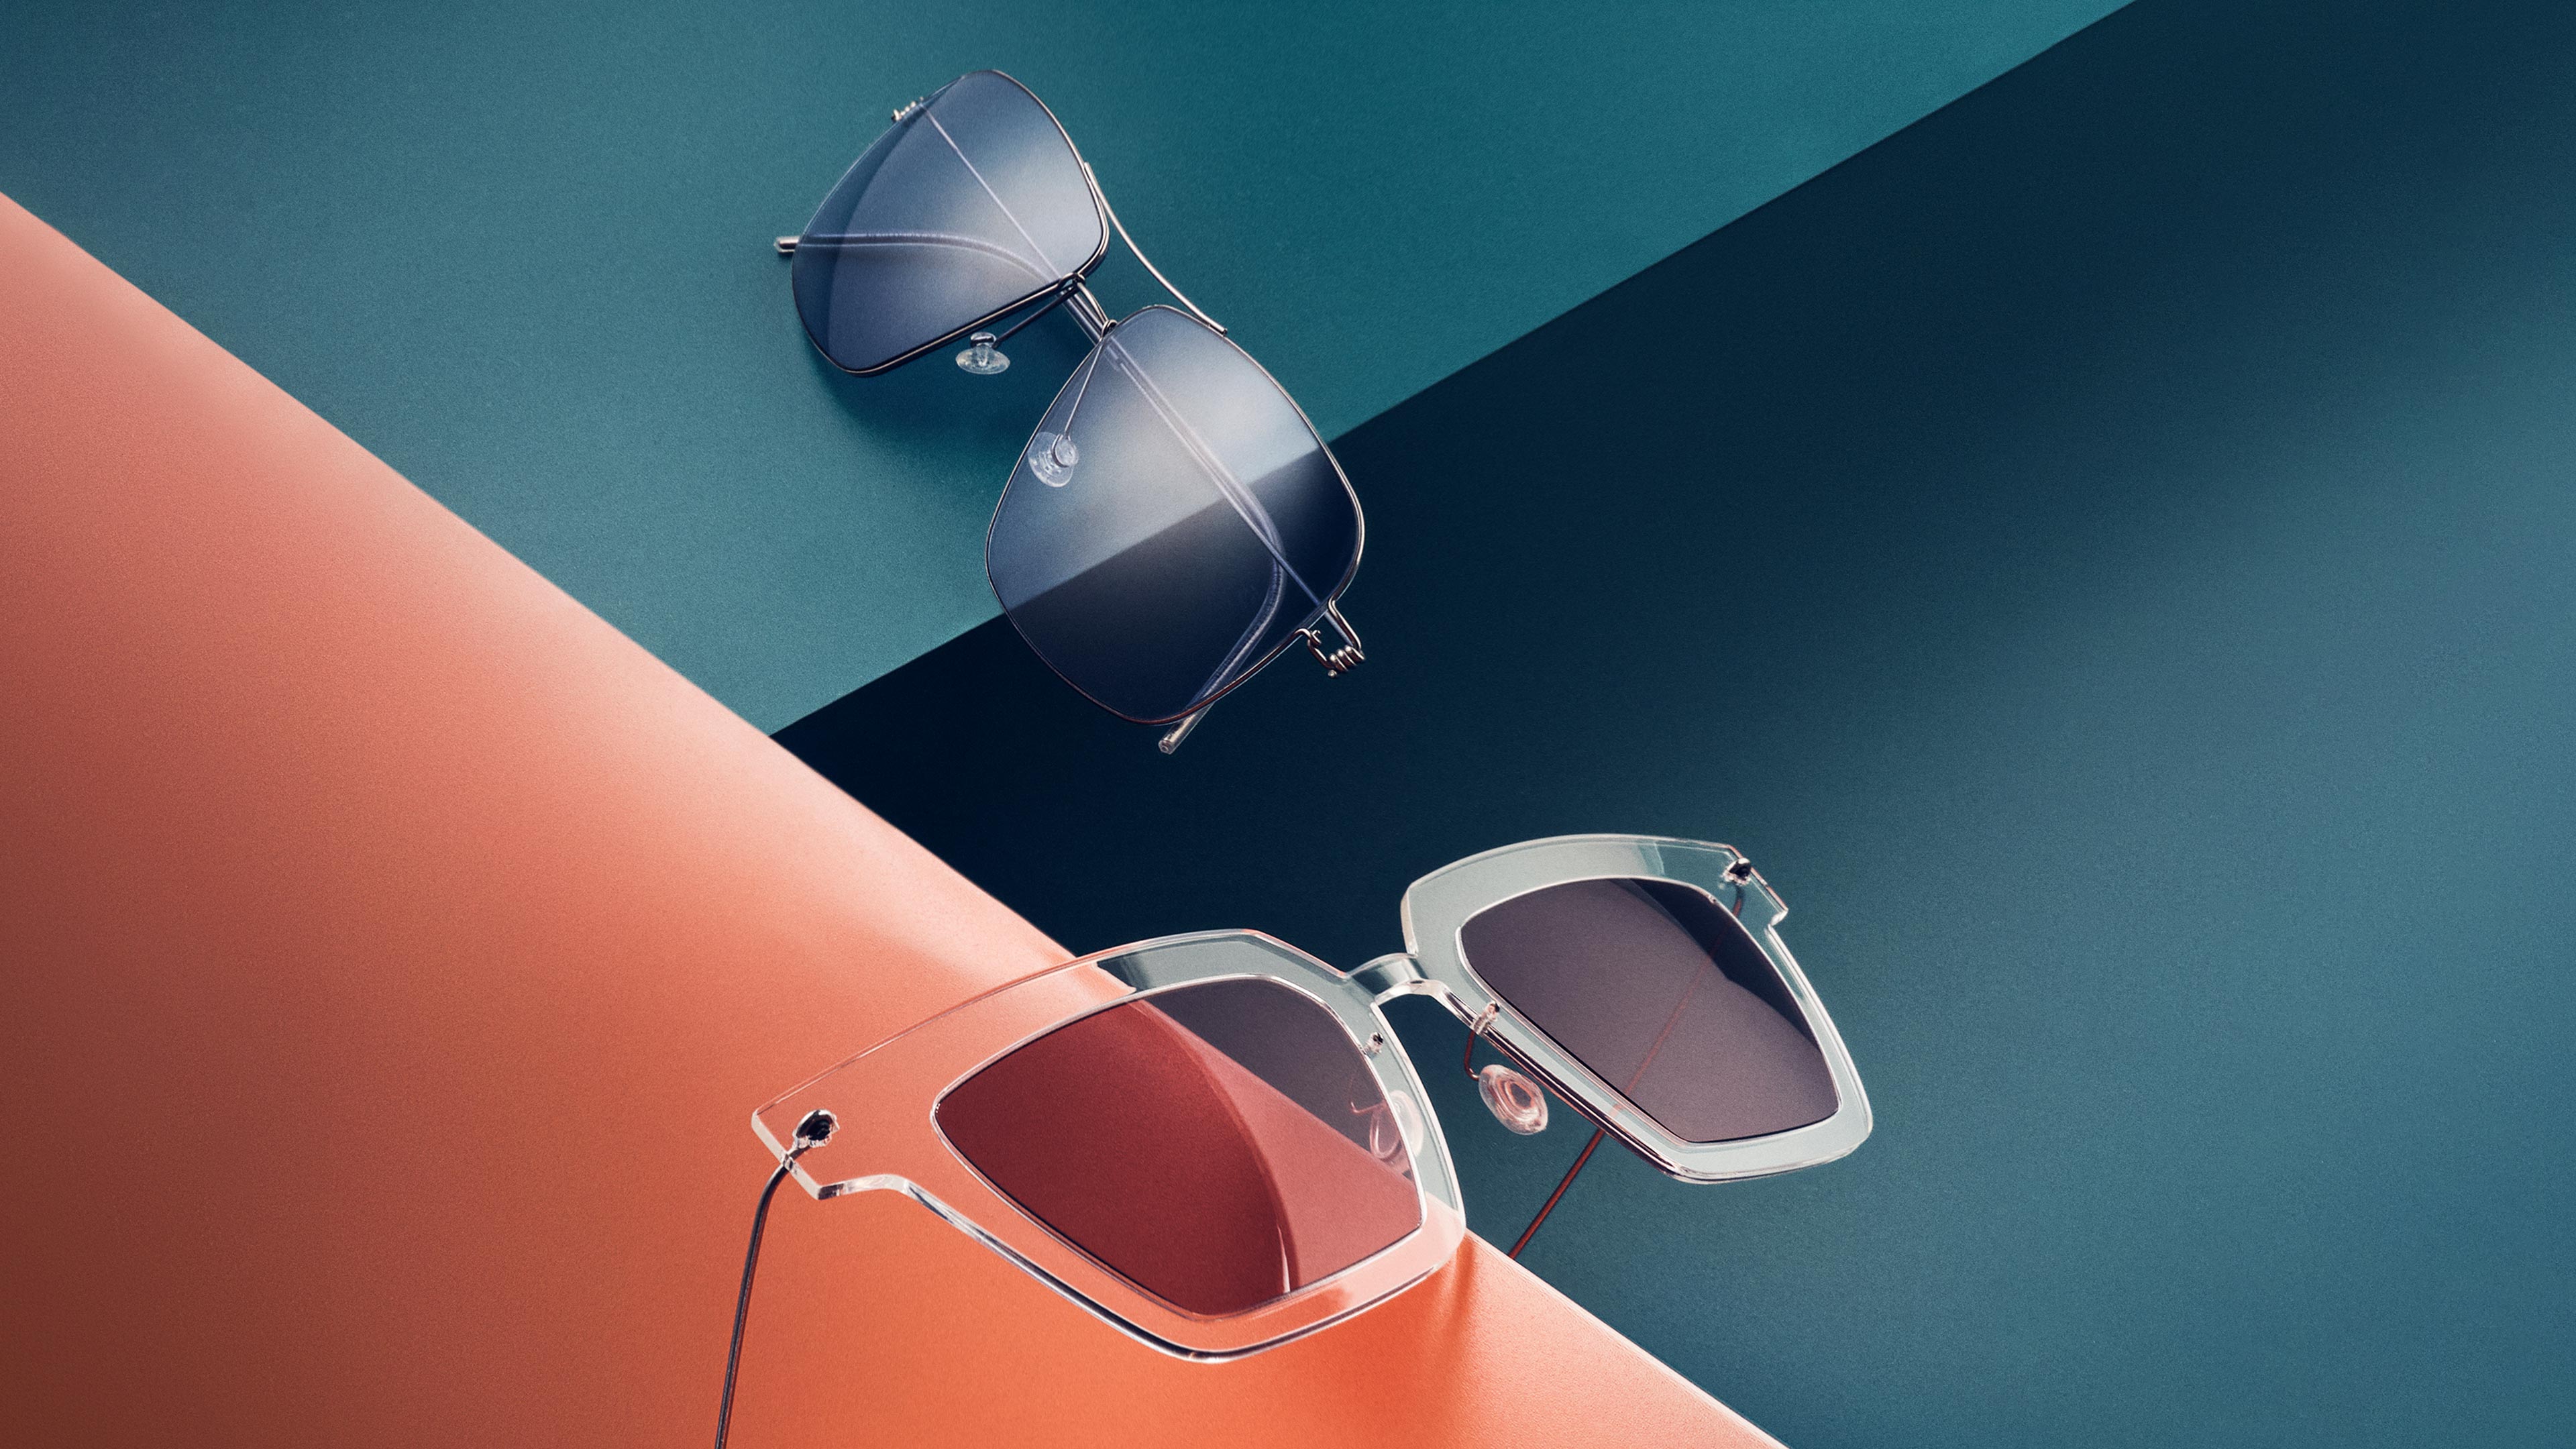 IDEAT-Magazinseite mit LINDBERG-Sonnenbrillen aus der Kollektion sun titanium, Modelle 8208 und 8327